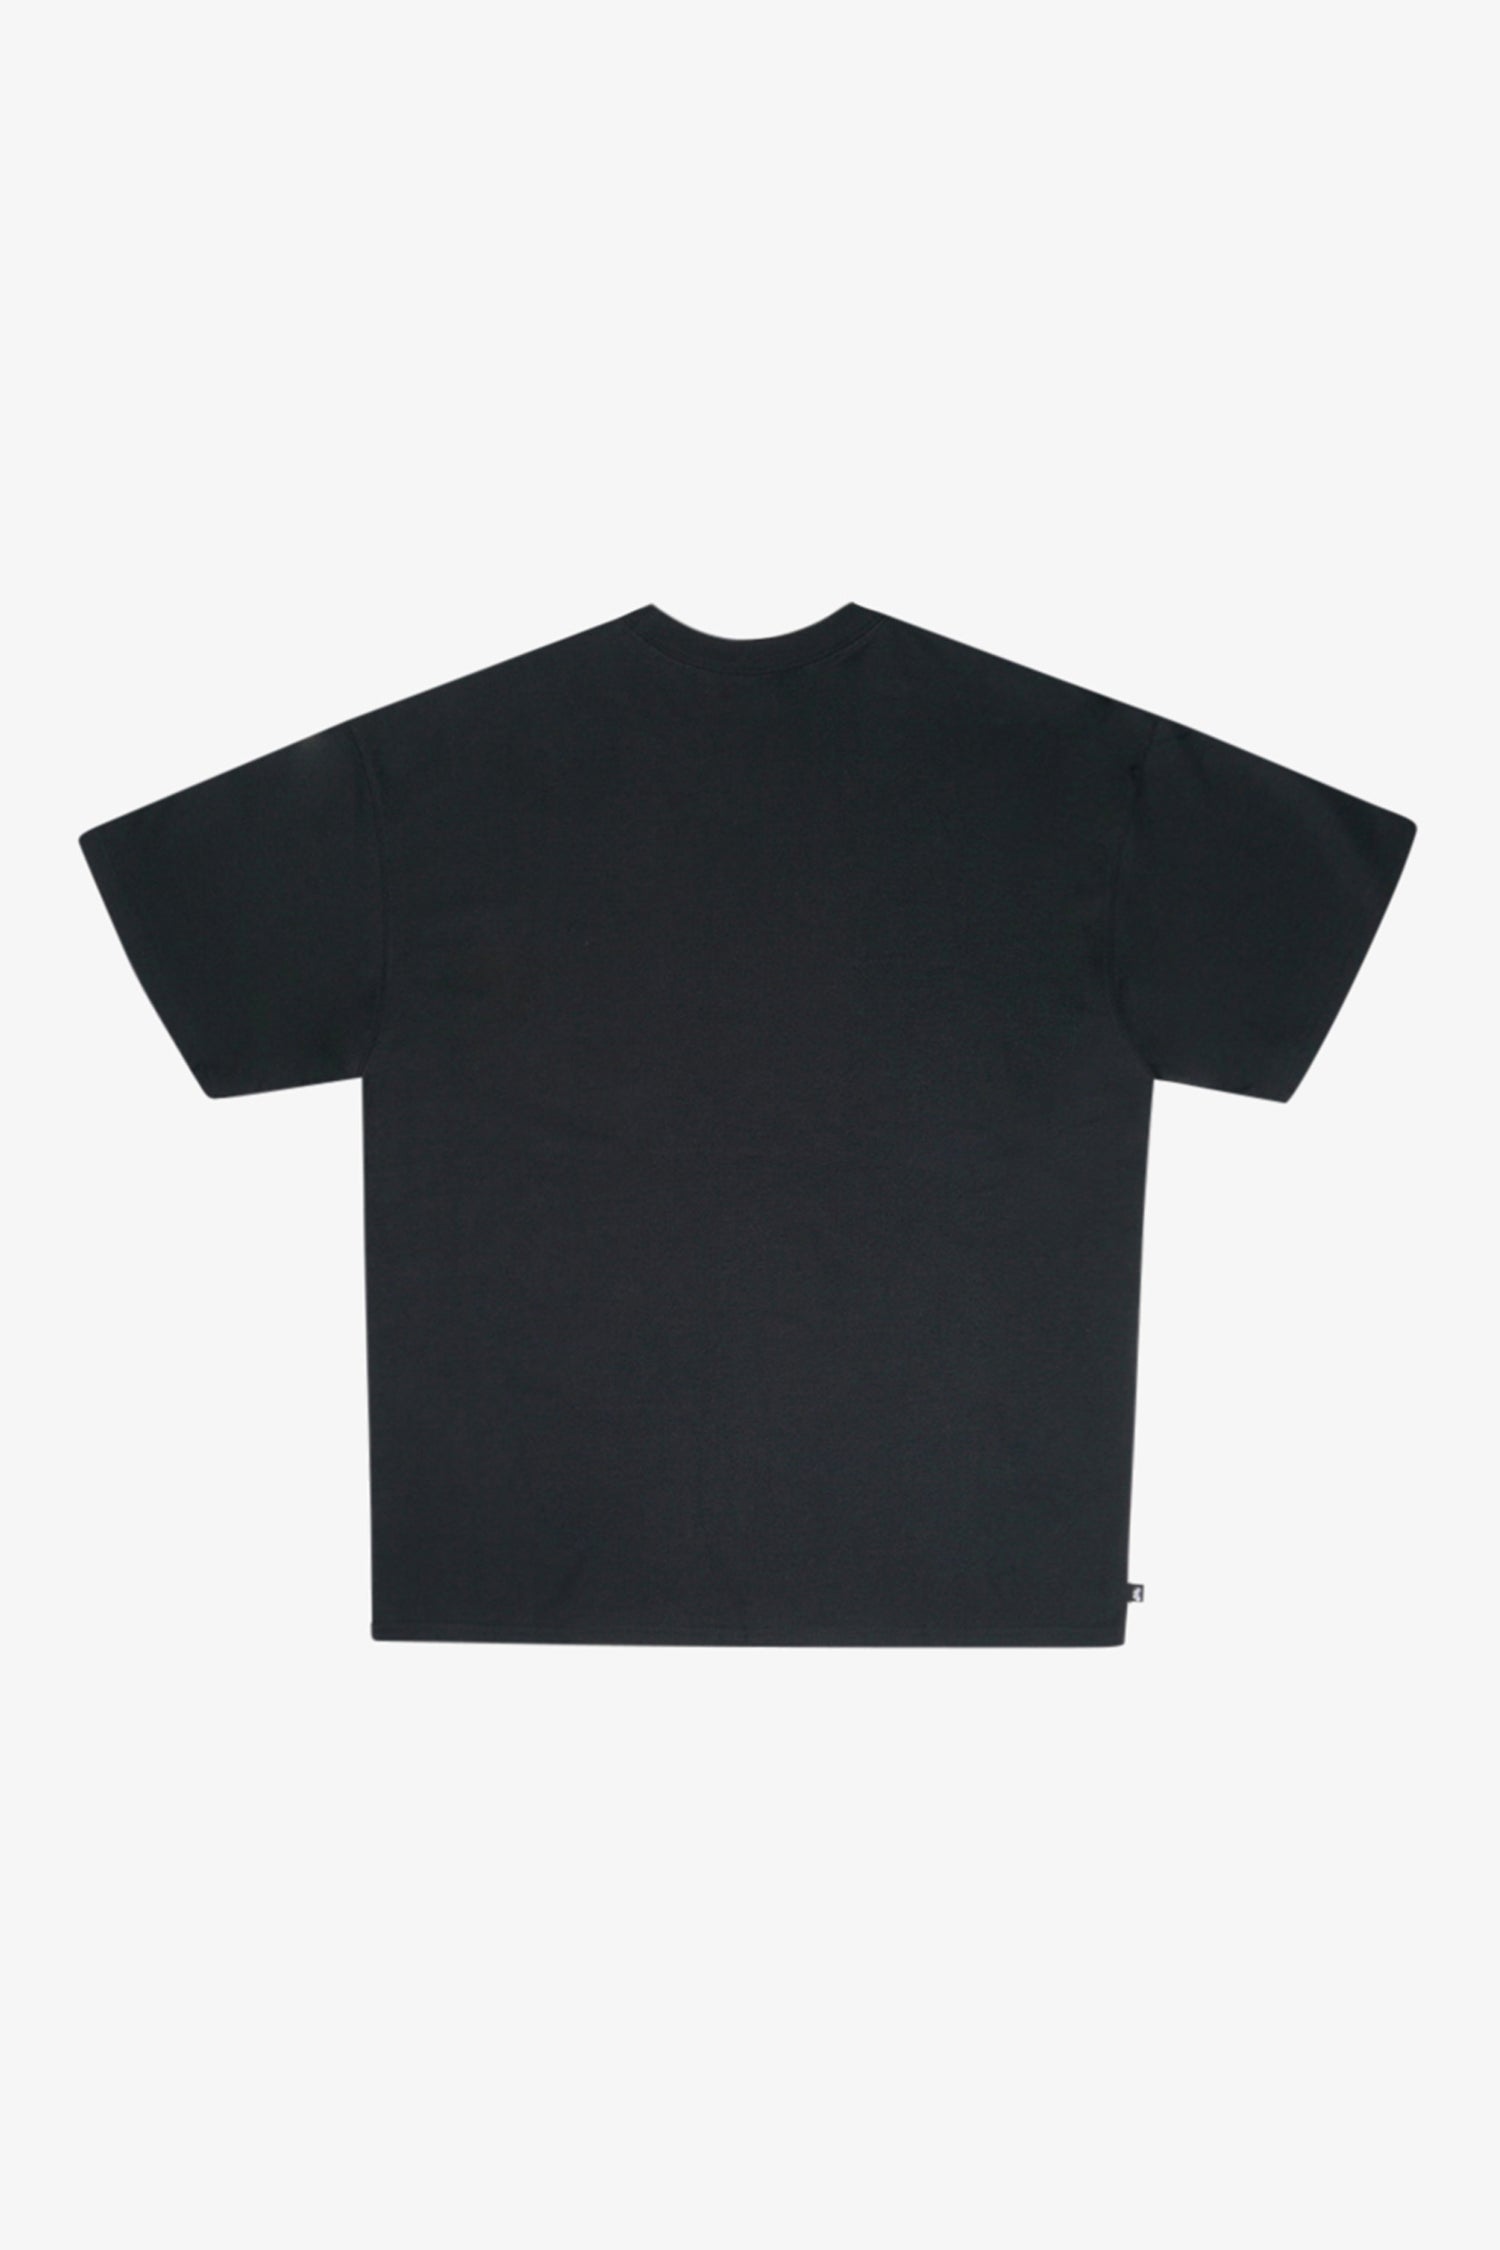 Selectshop FRAME - NIKE SB Daan Tee T-Shirts Dubai